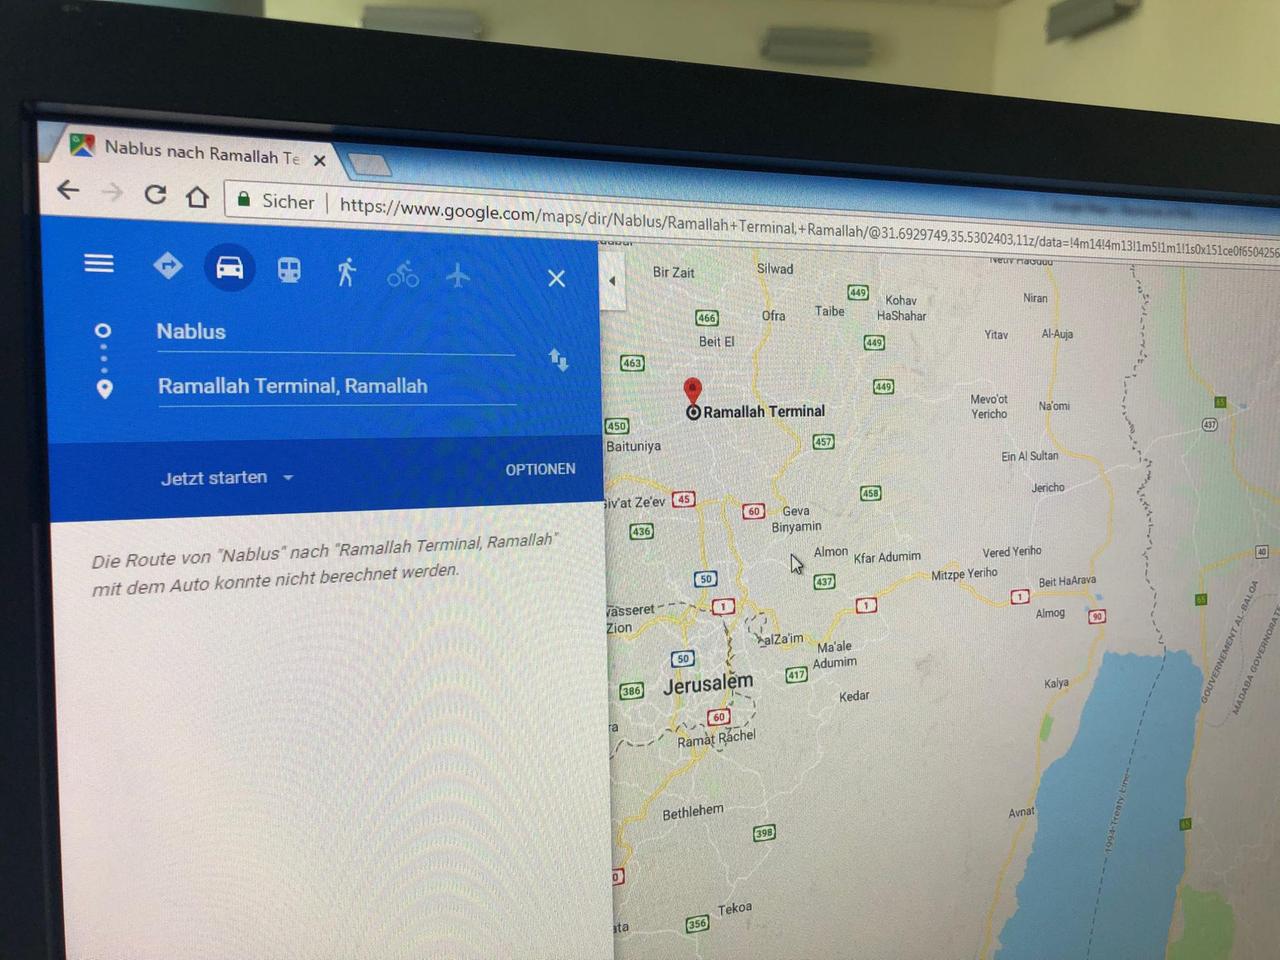 Die Suche nach einer Route von Nablus nach Ramallah führt bei Google Maps zur Fehlermeldung